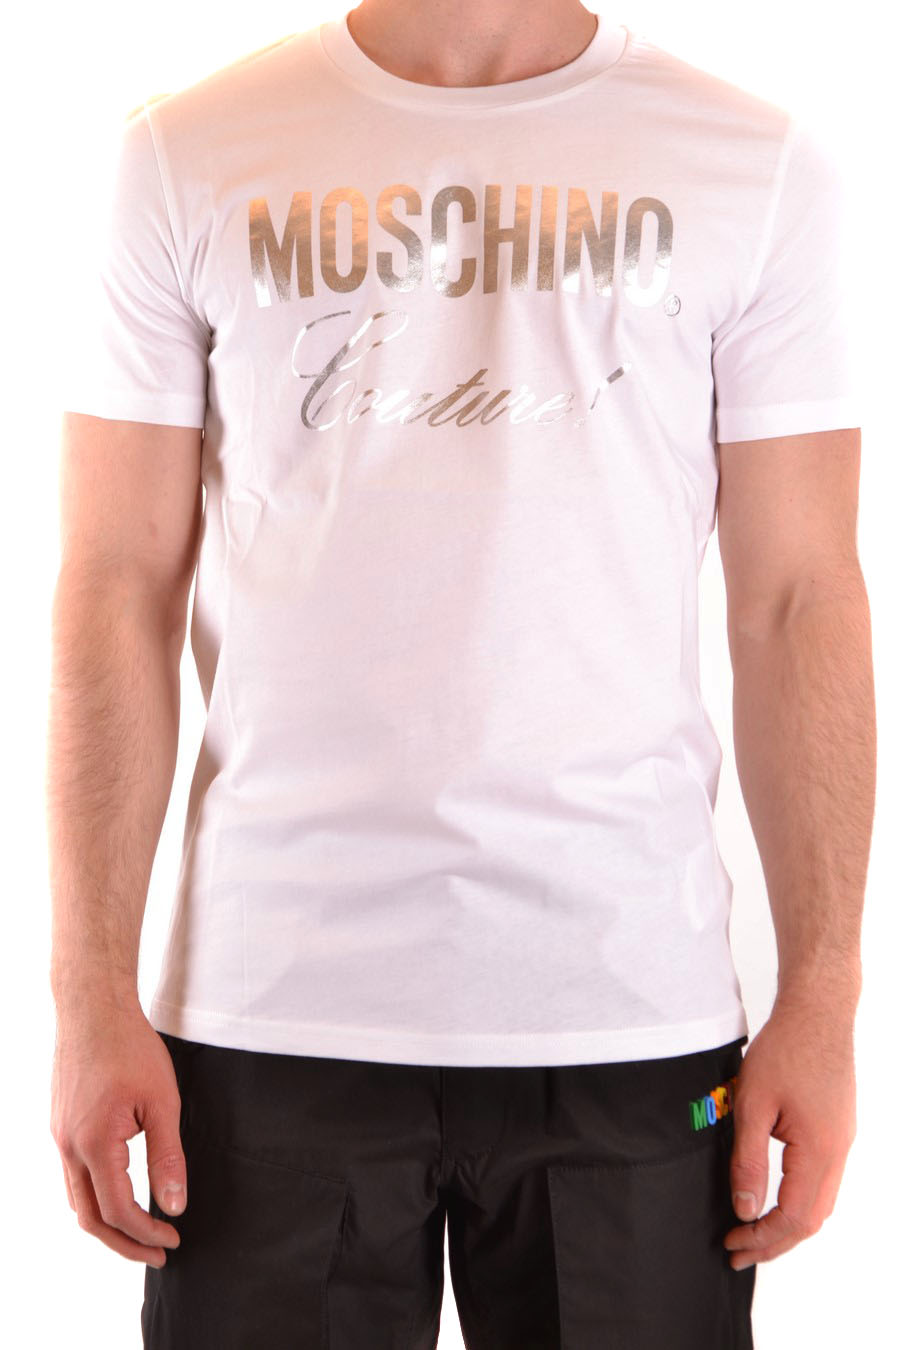 MOSCHINO T-shirts | ViganoBoutique.com